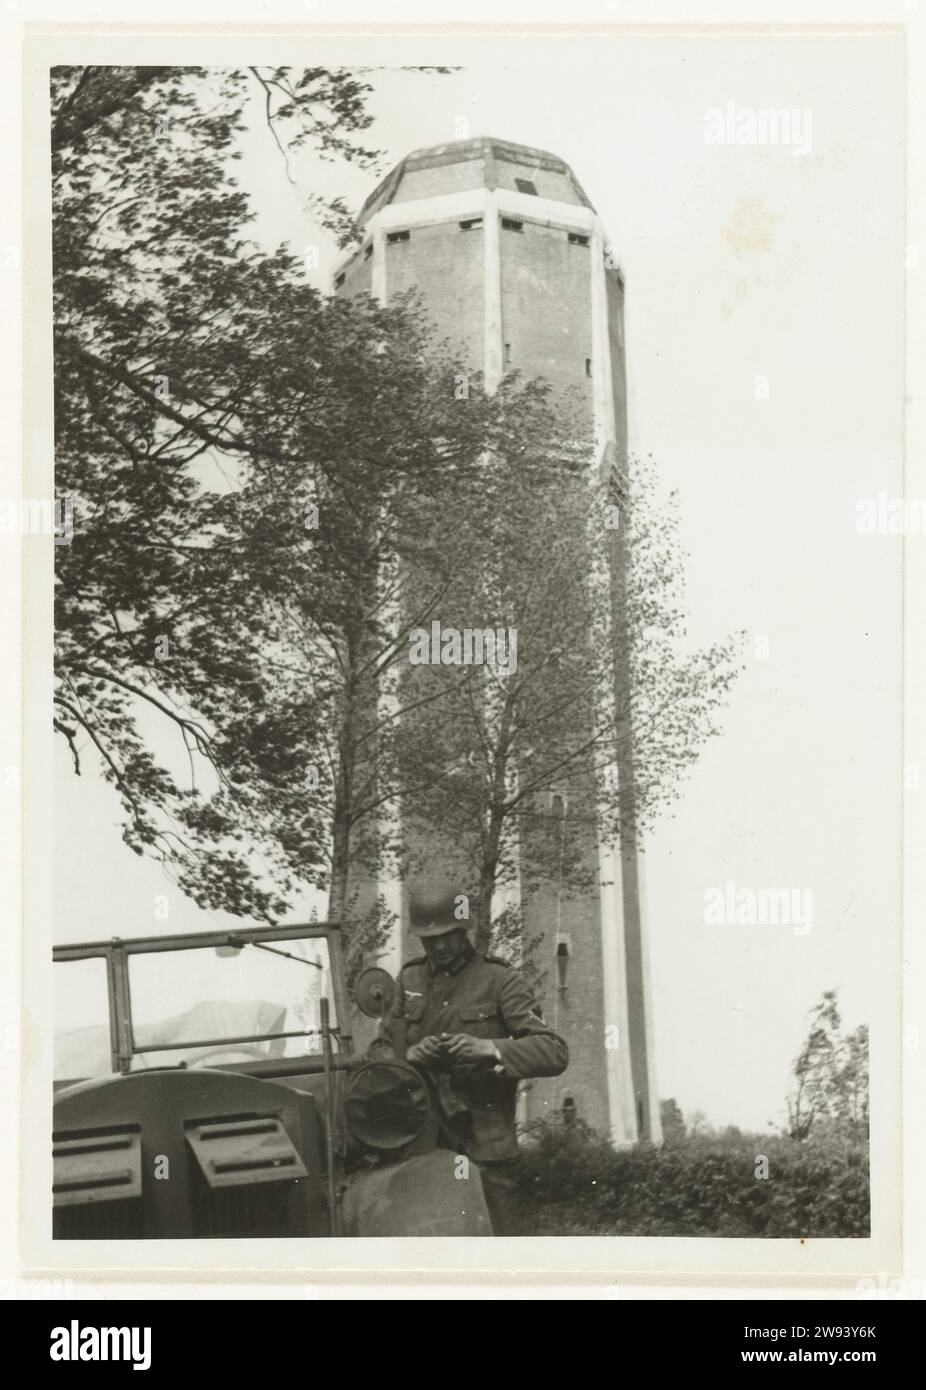 Wehrmacht Militair at a Water Tower, 1940 Fotografia Un militare della Wehrmacht è in macchina, dietro di lui c'è una torre dell'acqua. Questo deve servire da punto di osservazione. Sul retro c'è scritto: AUF D. Wasserturm von Dongen. Supporto fotografico Dong stampa argento gelatina occupazione  guerra. Torre dell'acqua Dong Foto Stock